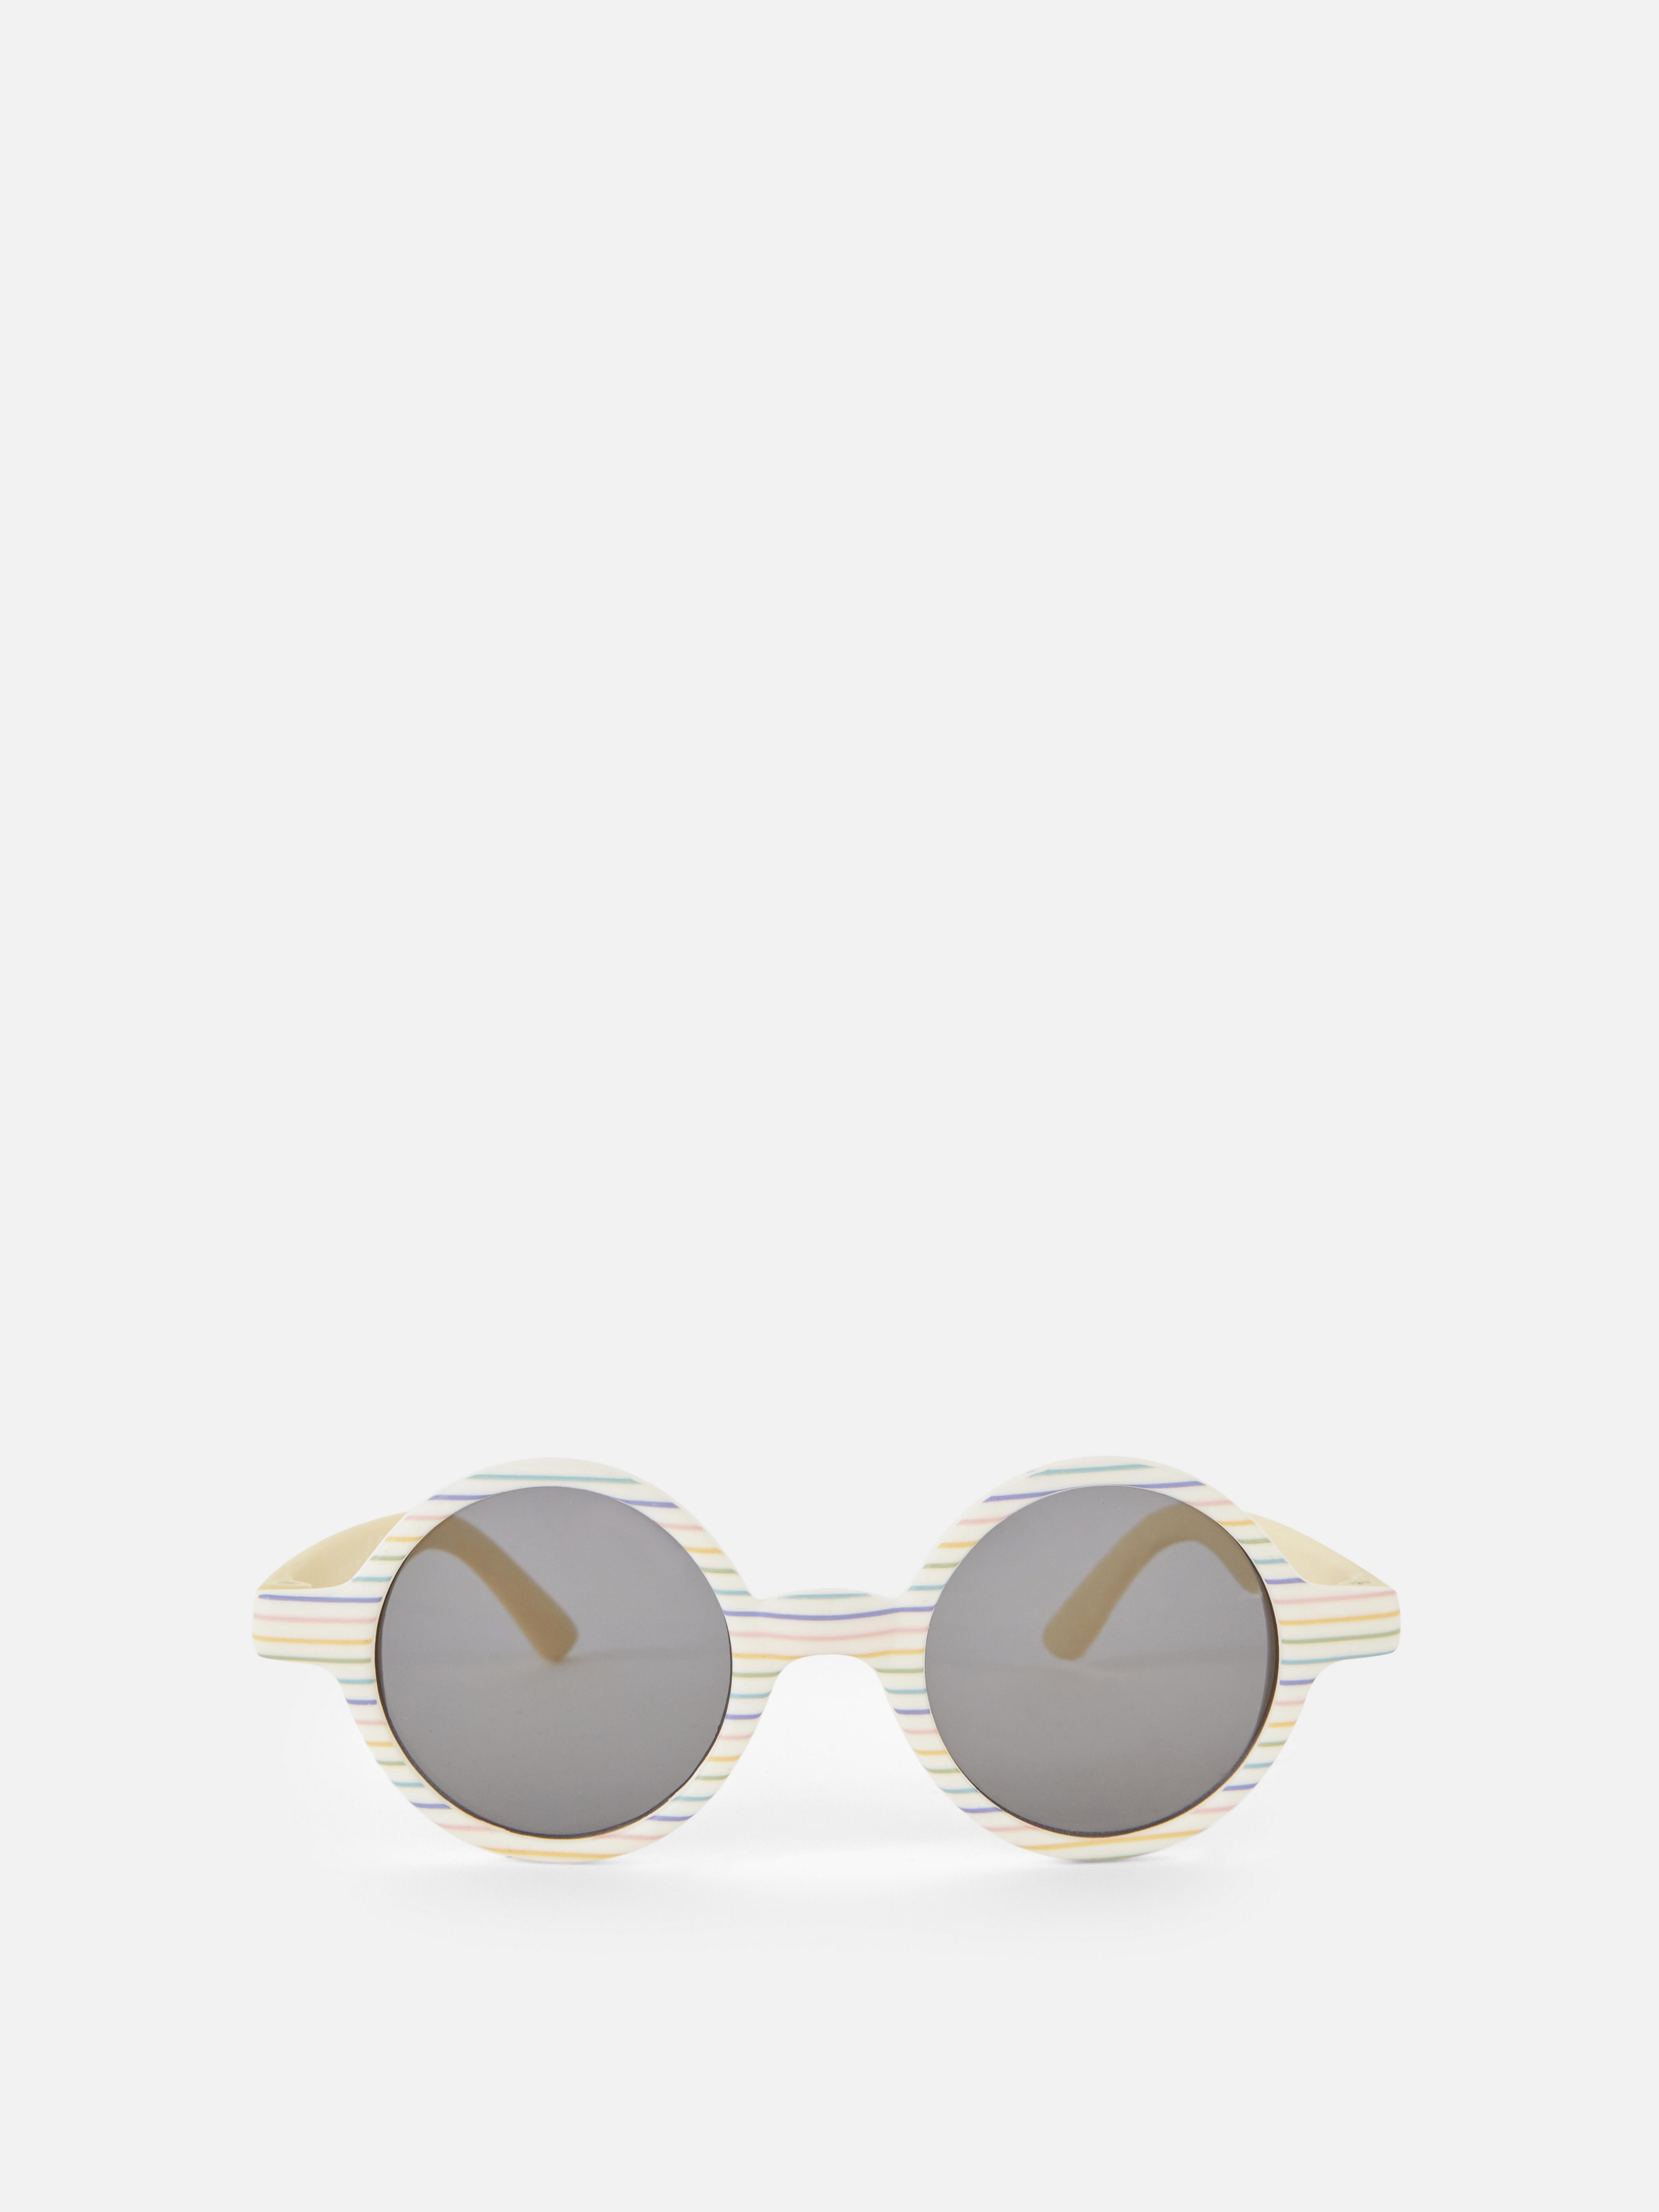 Baby Round Sunglasses